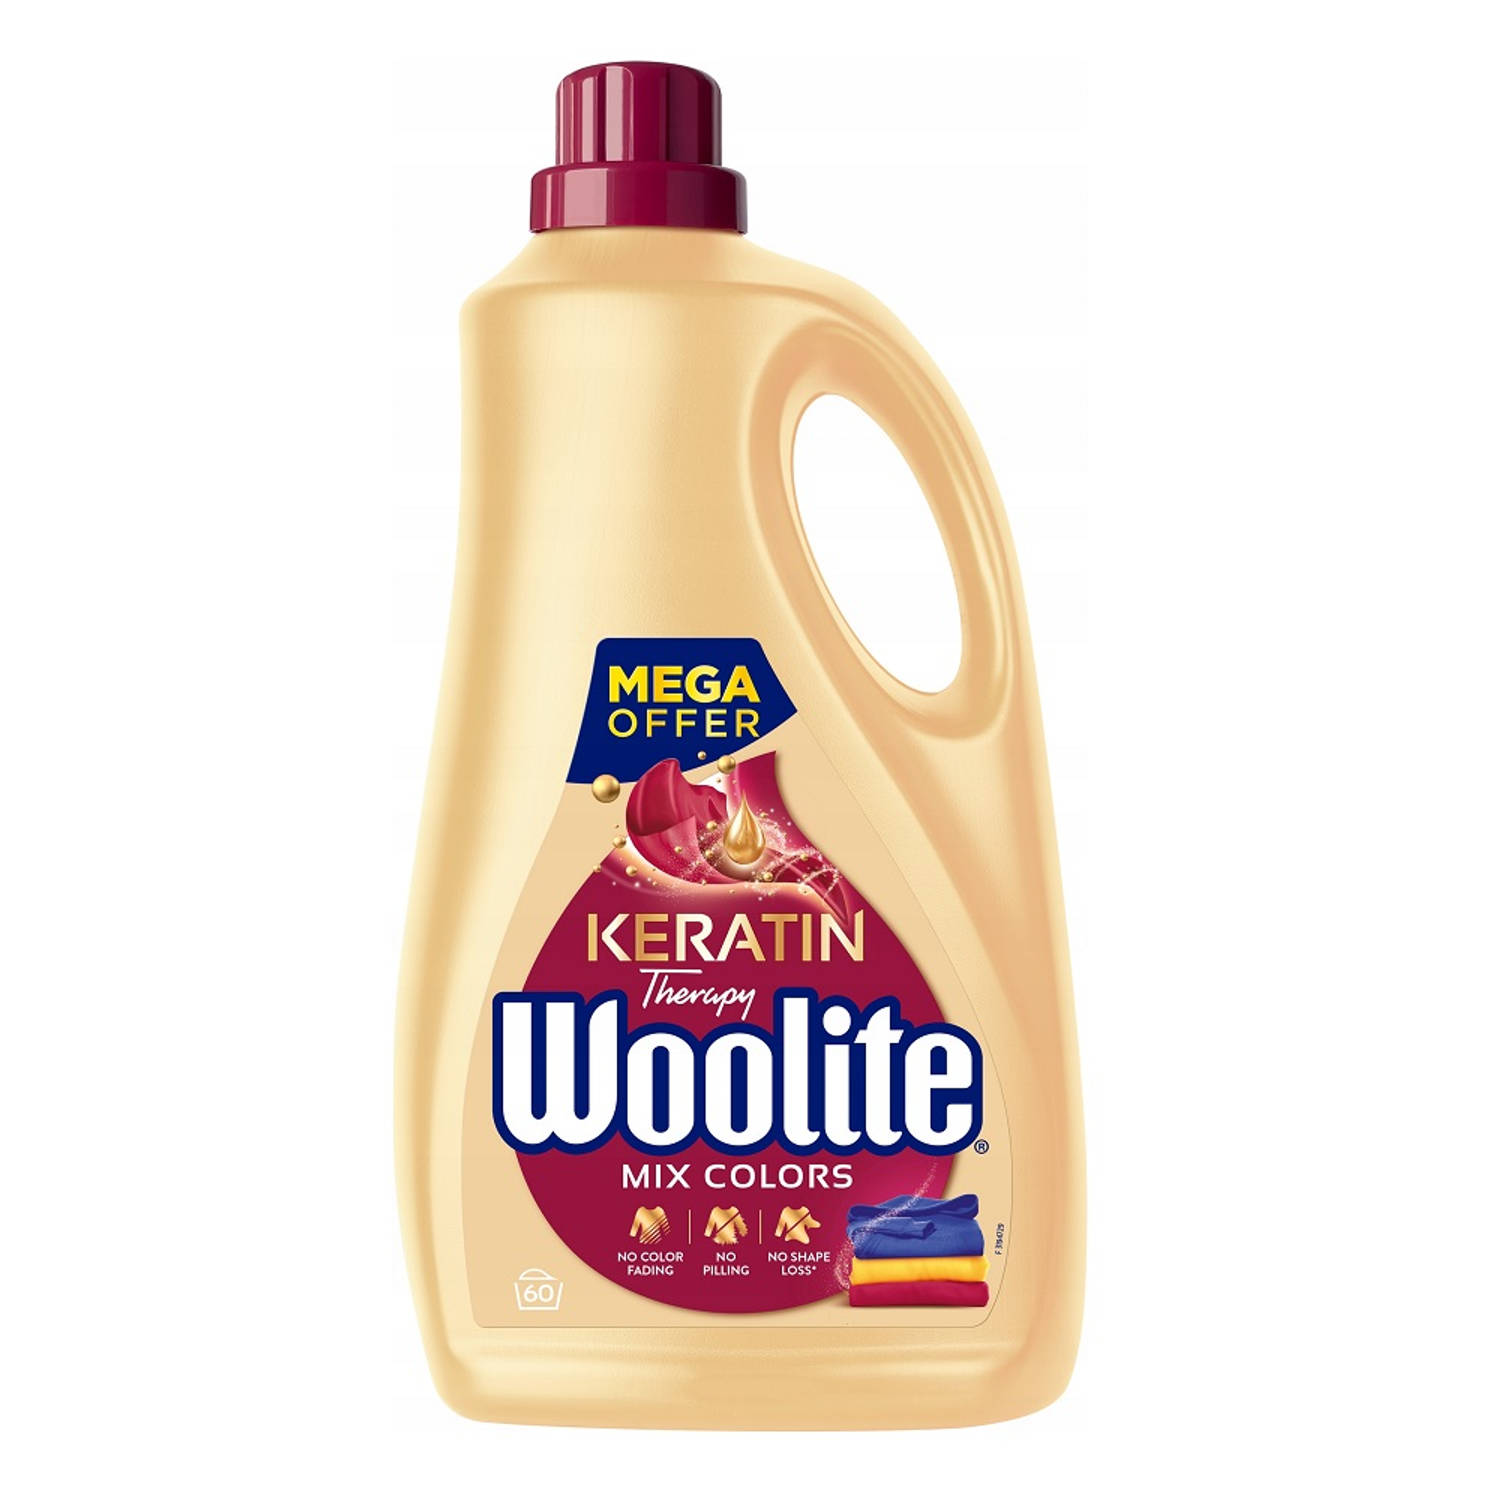 Woolite Wasmiddel Mix Colors Liquid Detergent 60 Wasbeurten